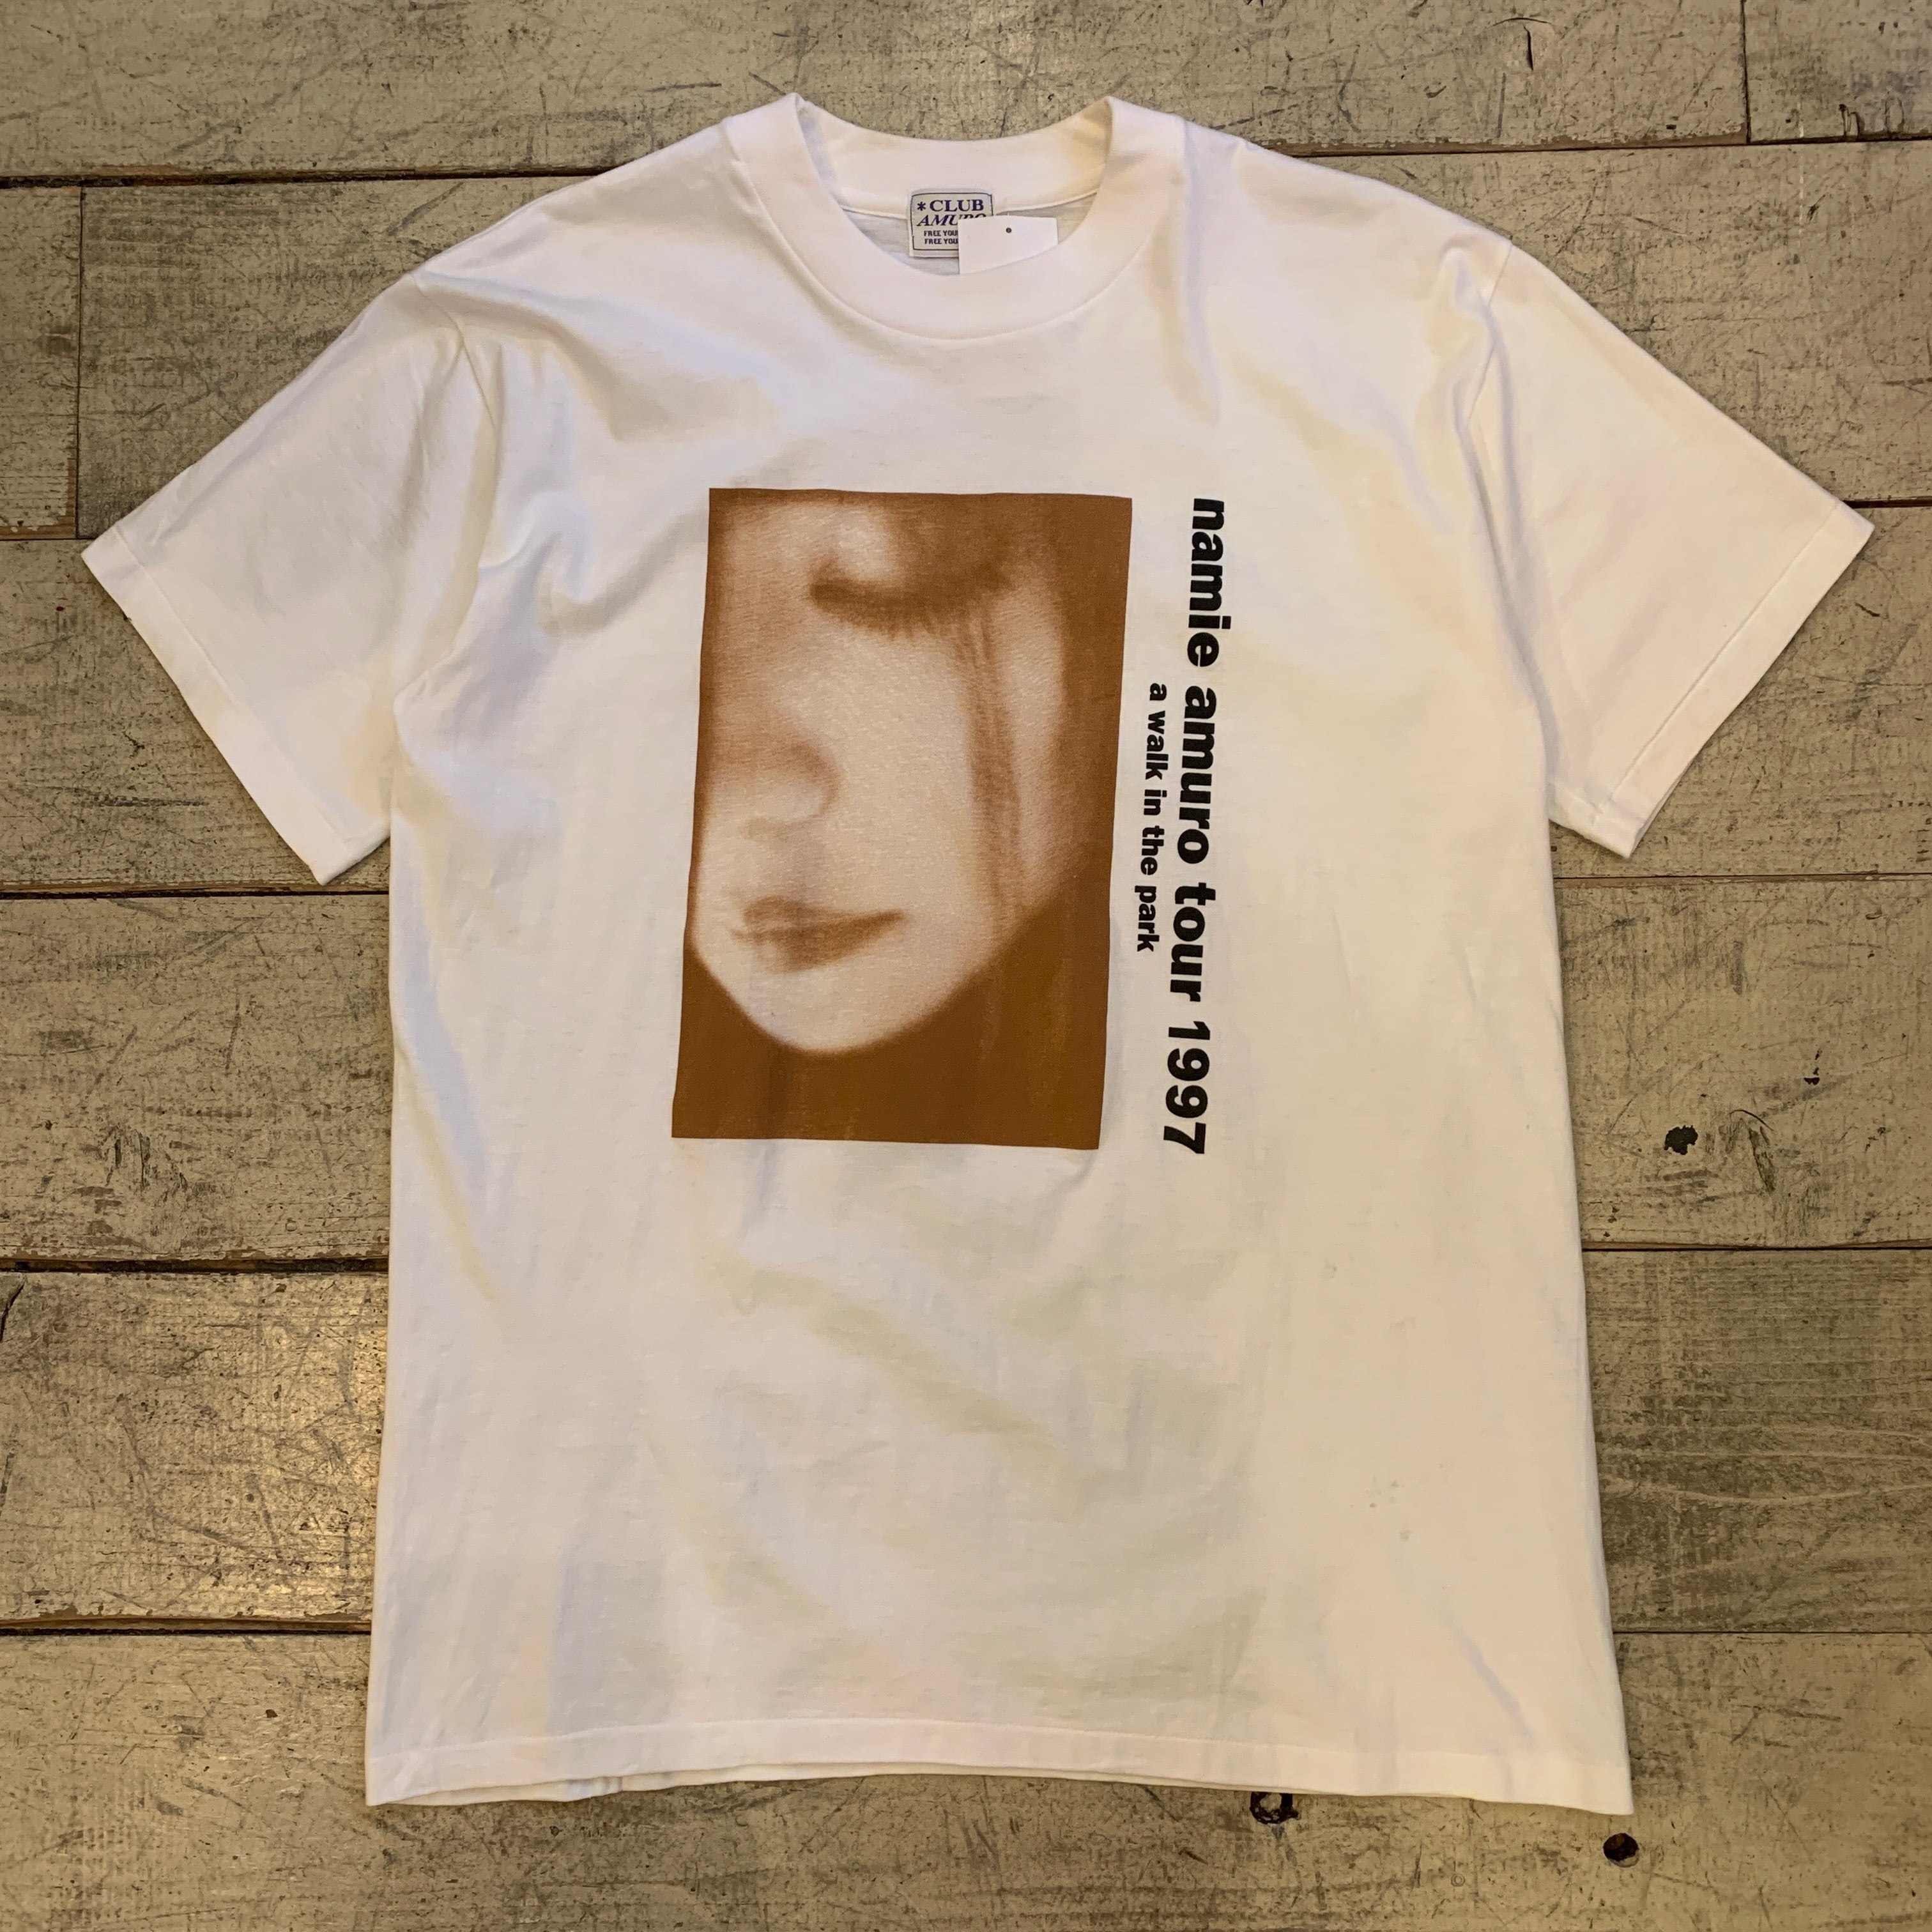 ★鬼レア★安室奈美恵1997年concentration ライブTシャツ 90s